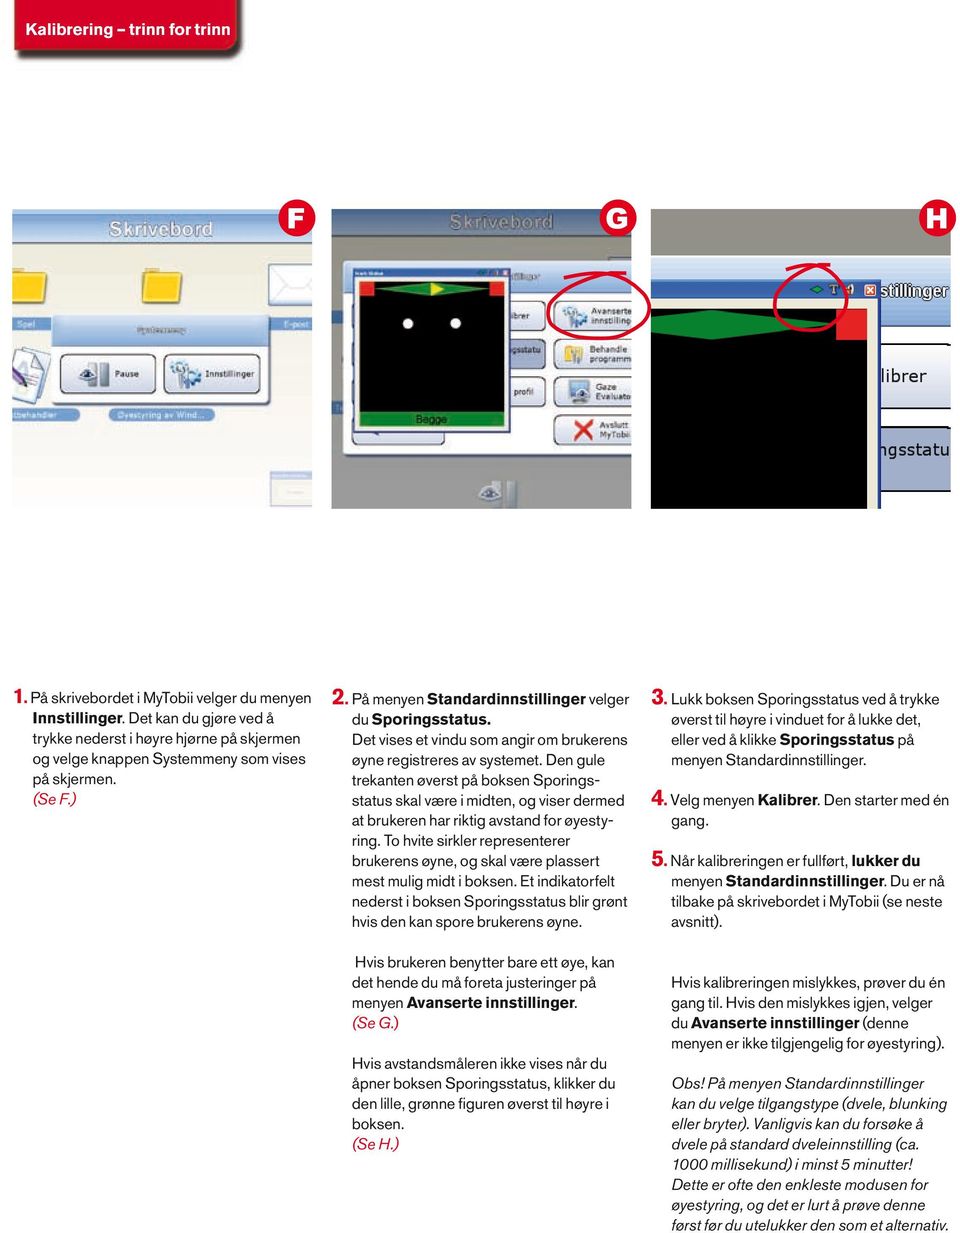 Det vises et vindu som angir om brukerens øyne registreres av systemet.